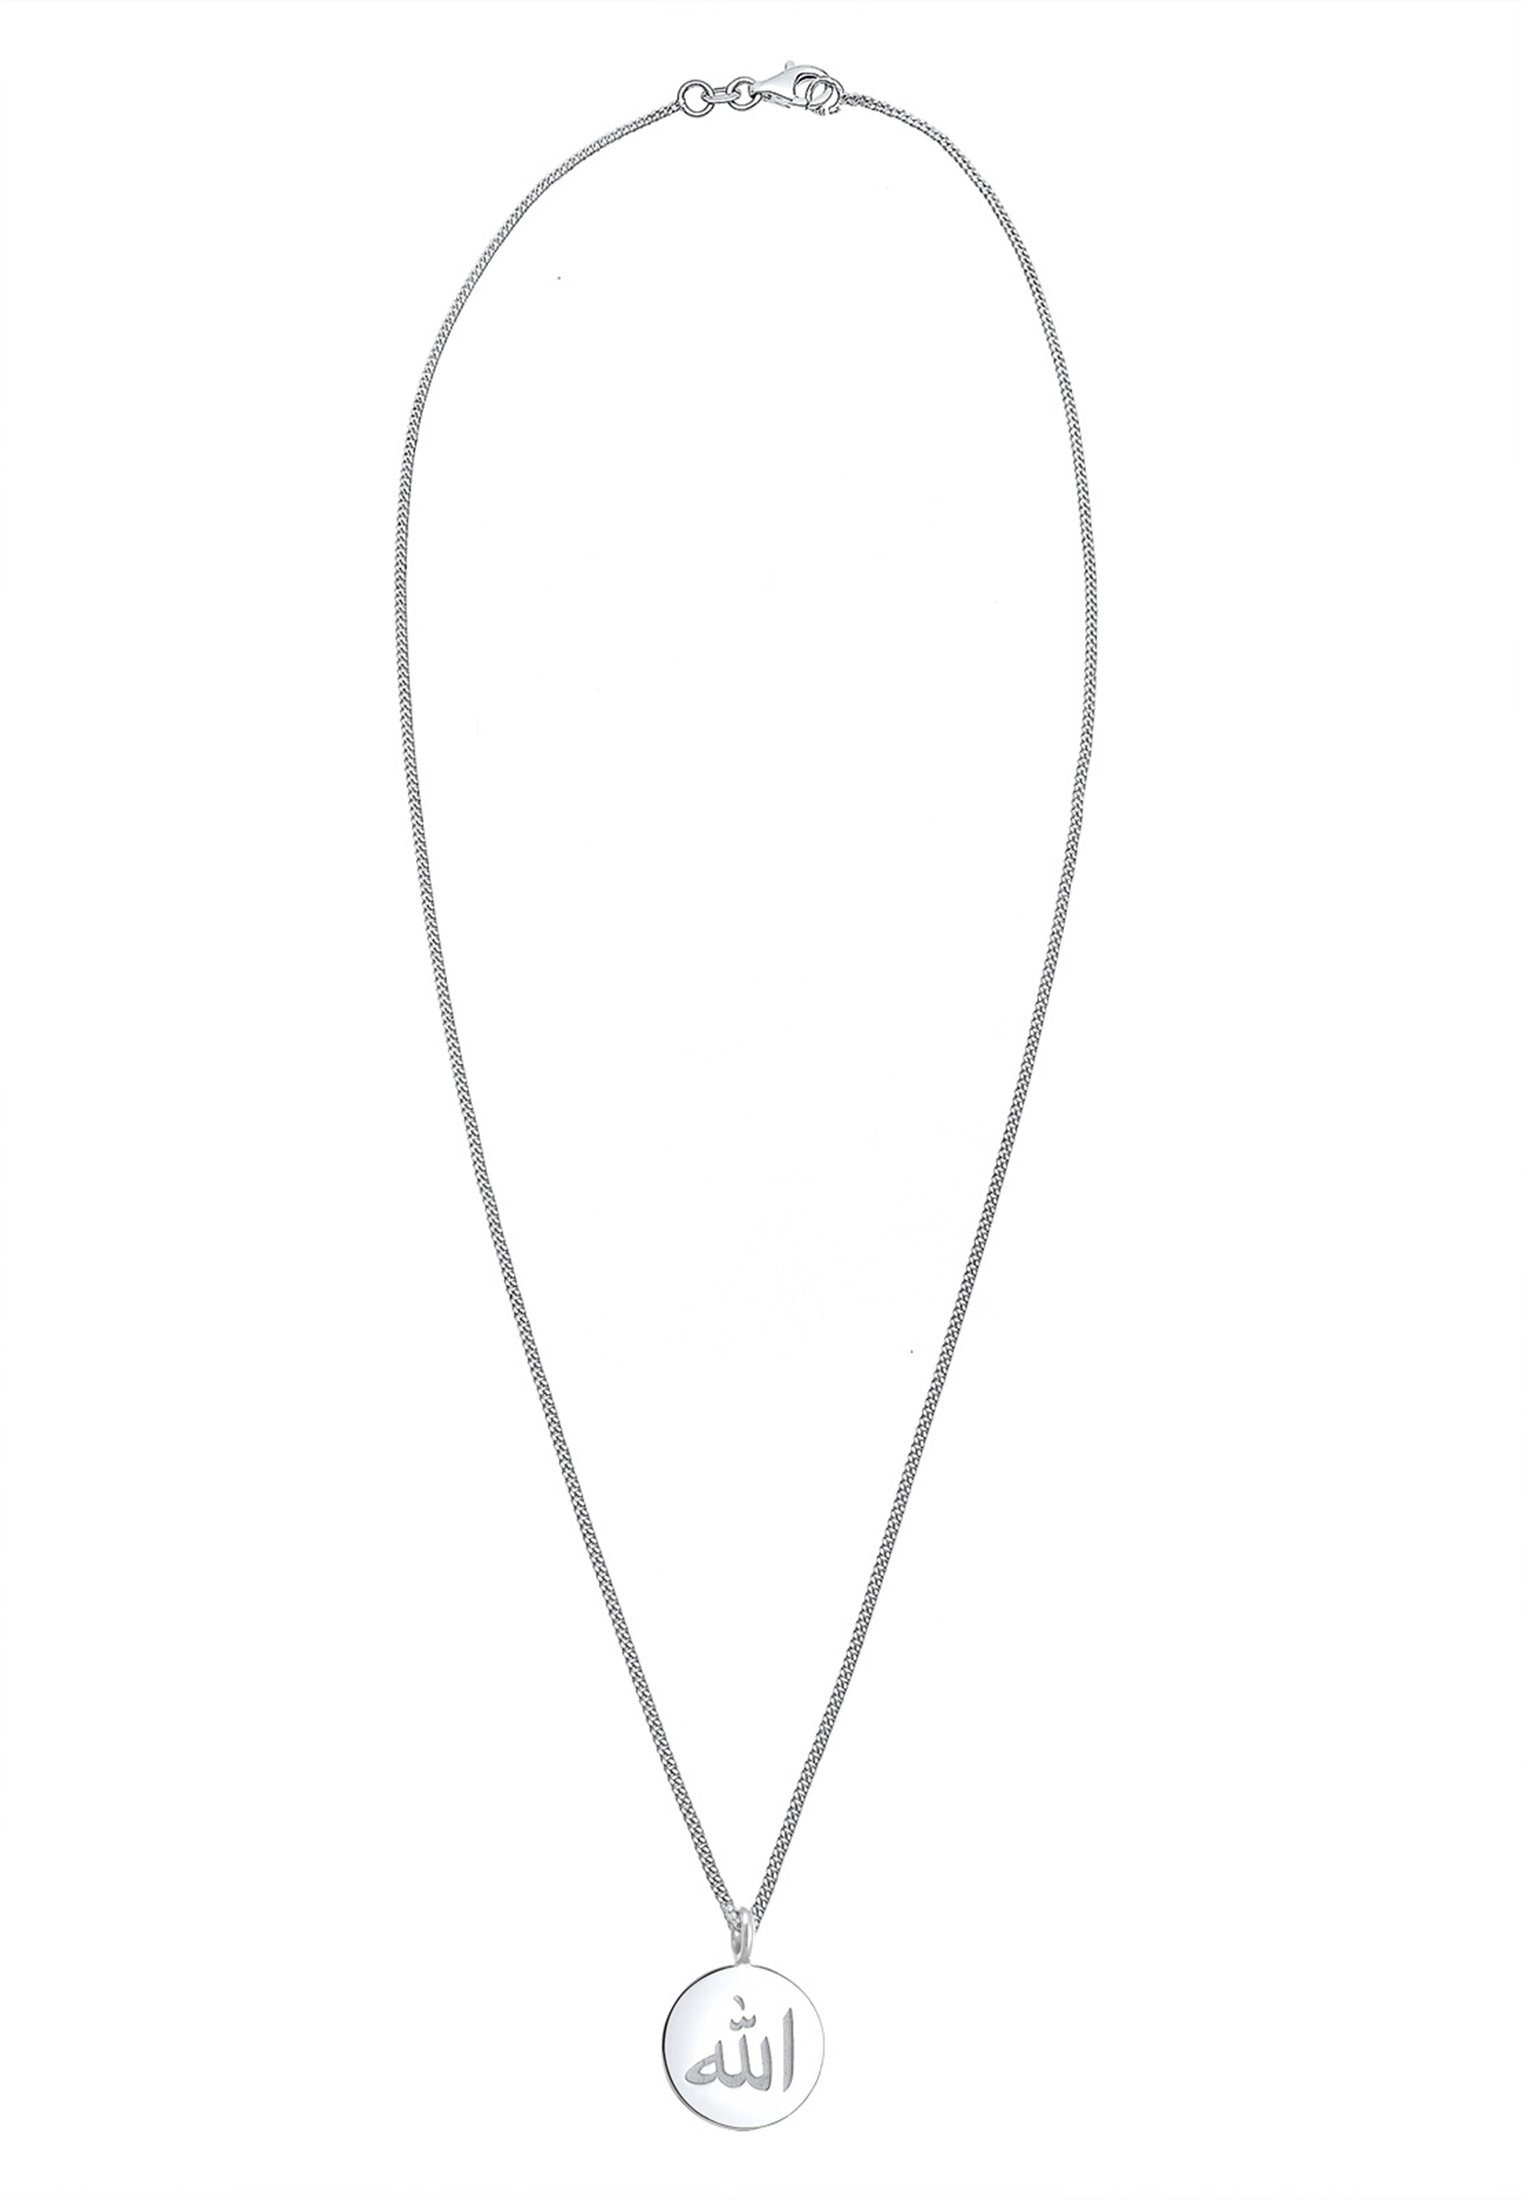 Anhänger Symbol mit Kette Silber Elli Schriftzeichen Sterling Geo 925